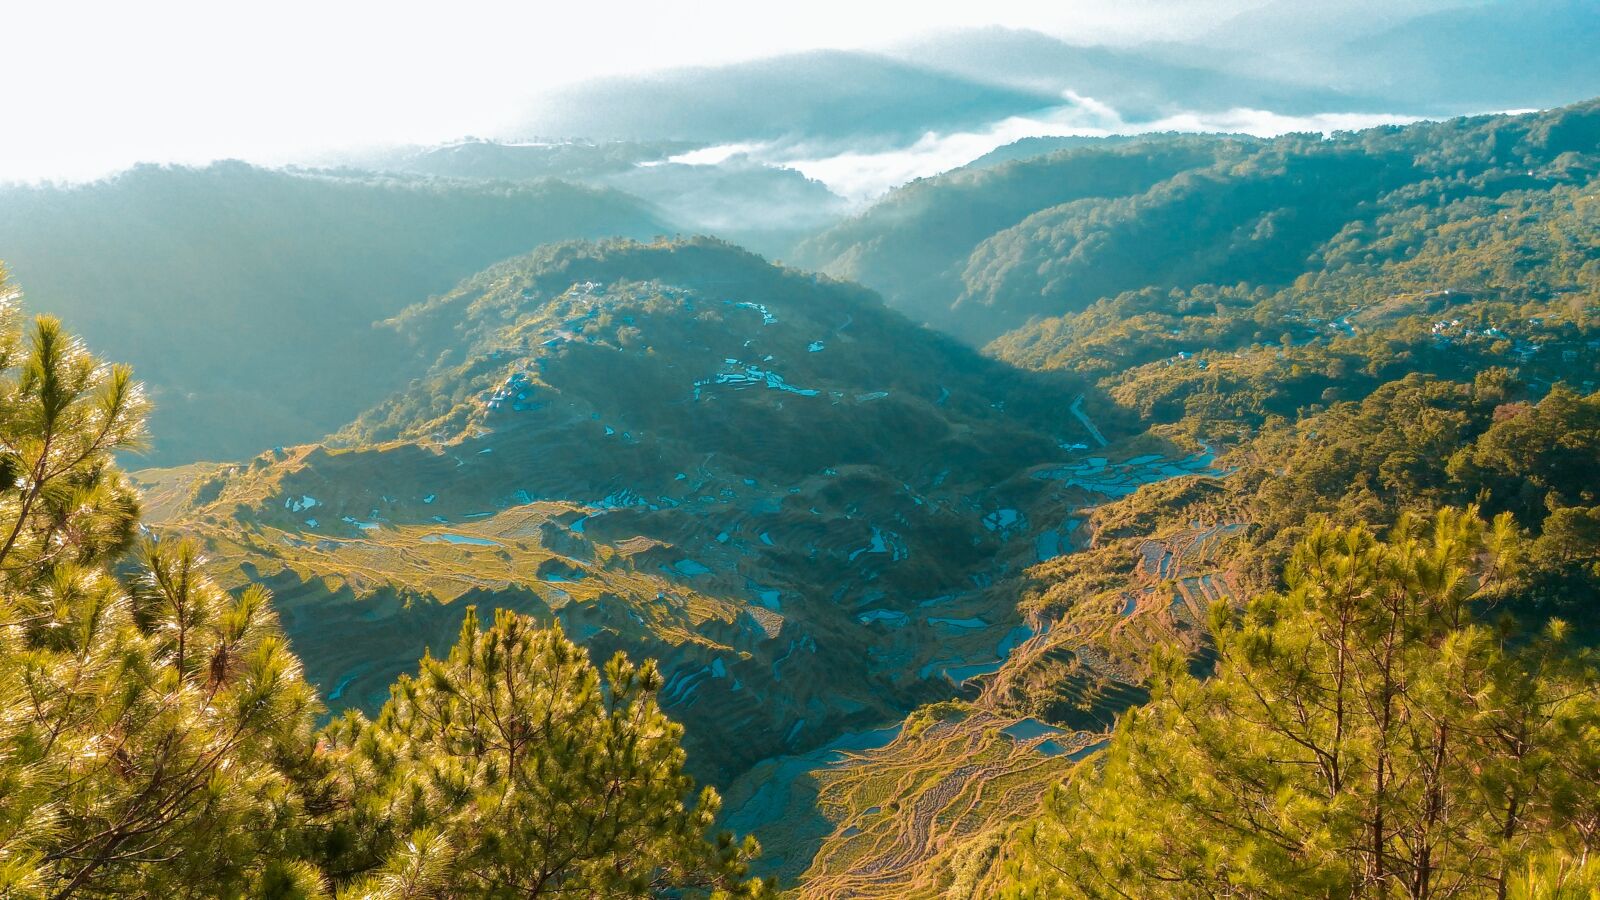 ASUS ZenFone Selfie (ZD551KL) sample photo. Mountains, landscape, adventure photography